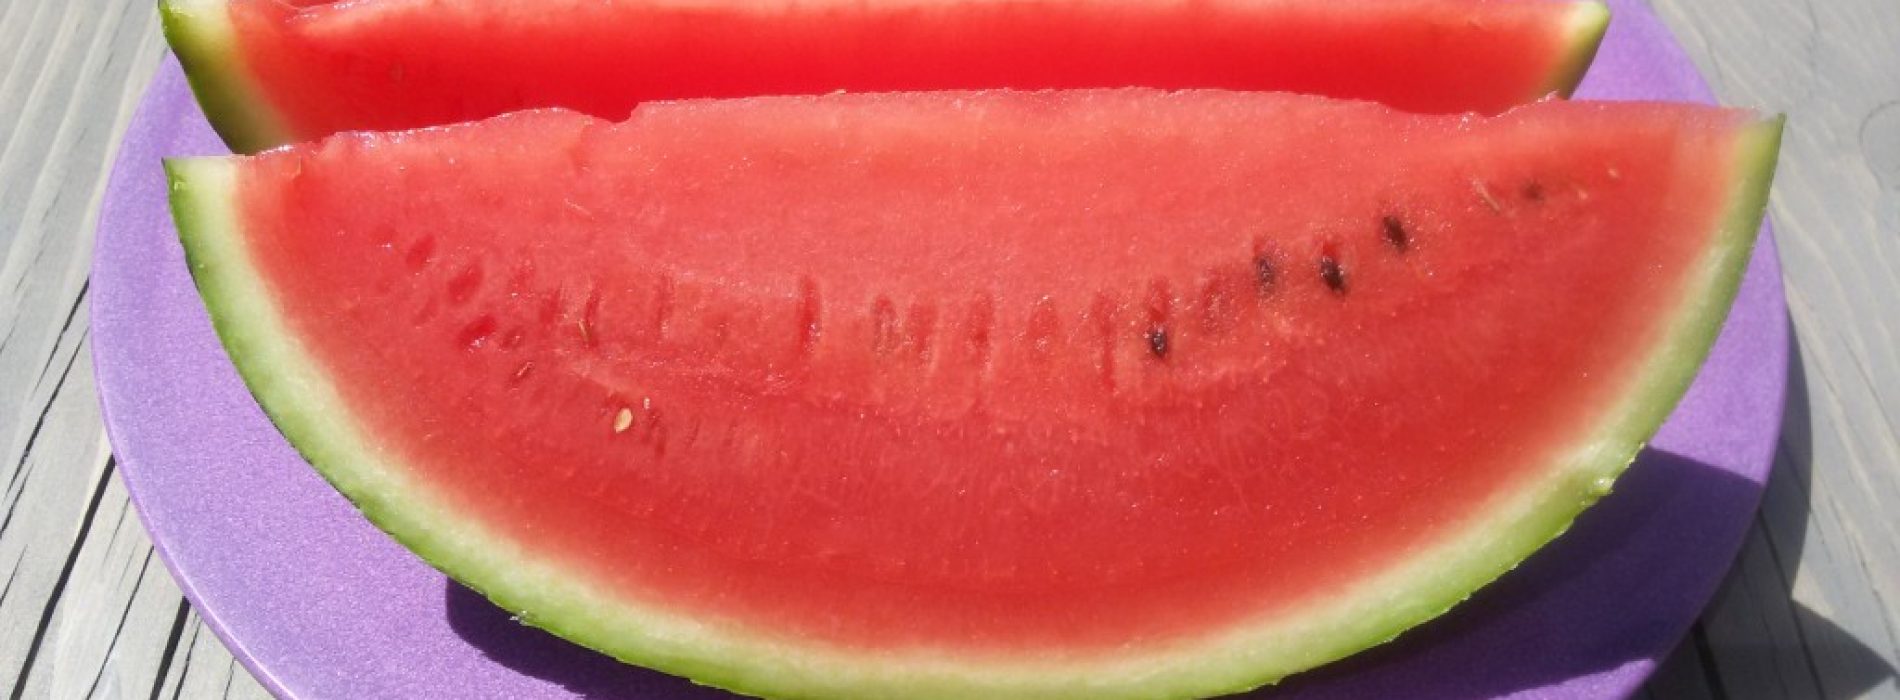 Watermeloen VERLAAGT de bloeddruk: kijk hoe u het risico op hartbeschadiging kunt vermijden